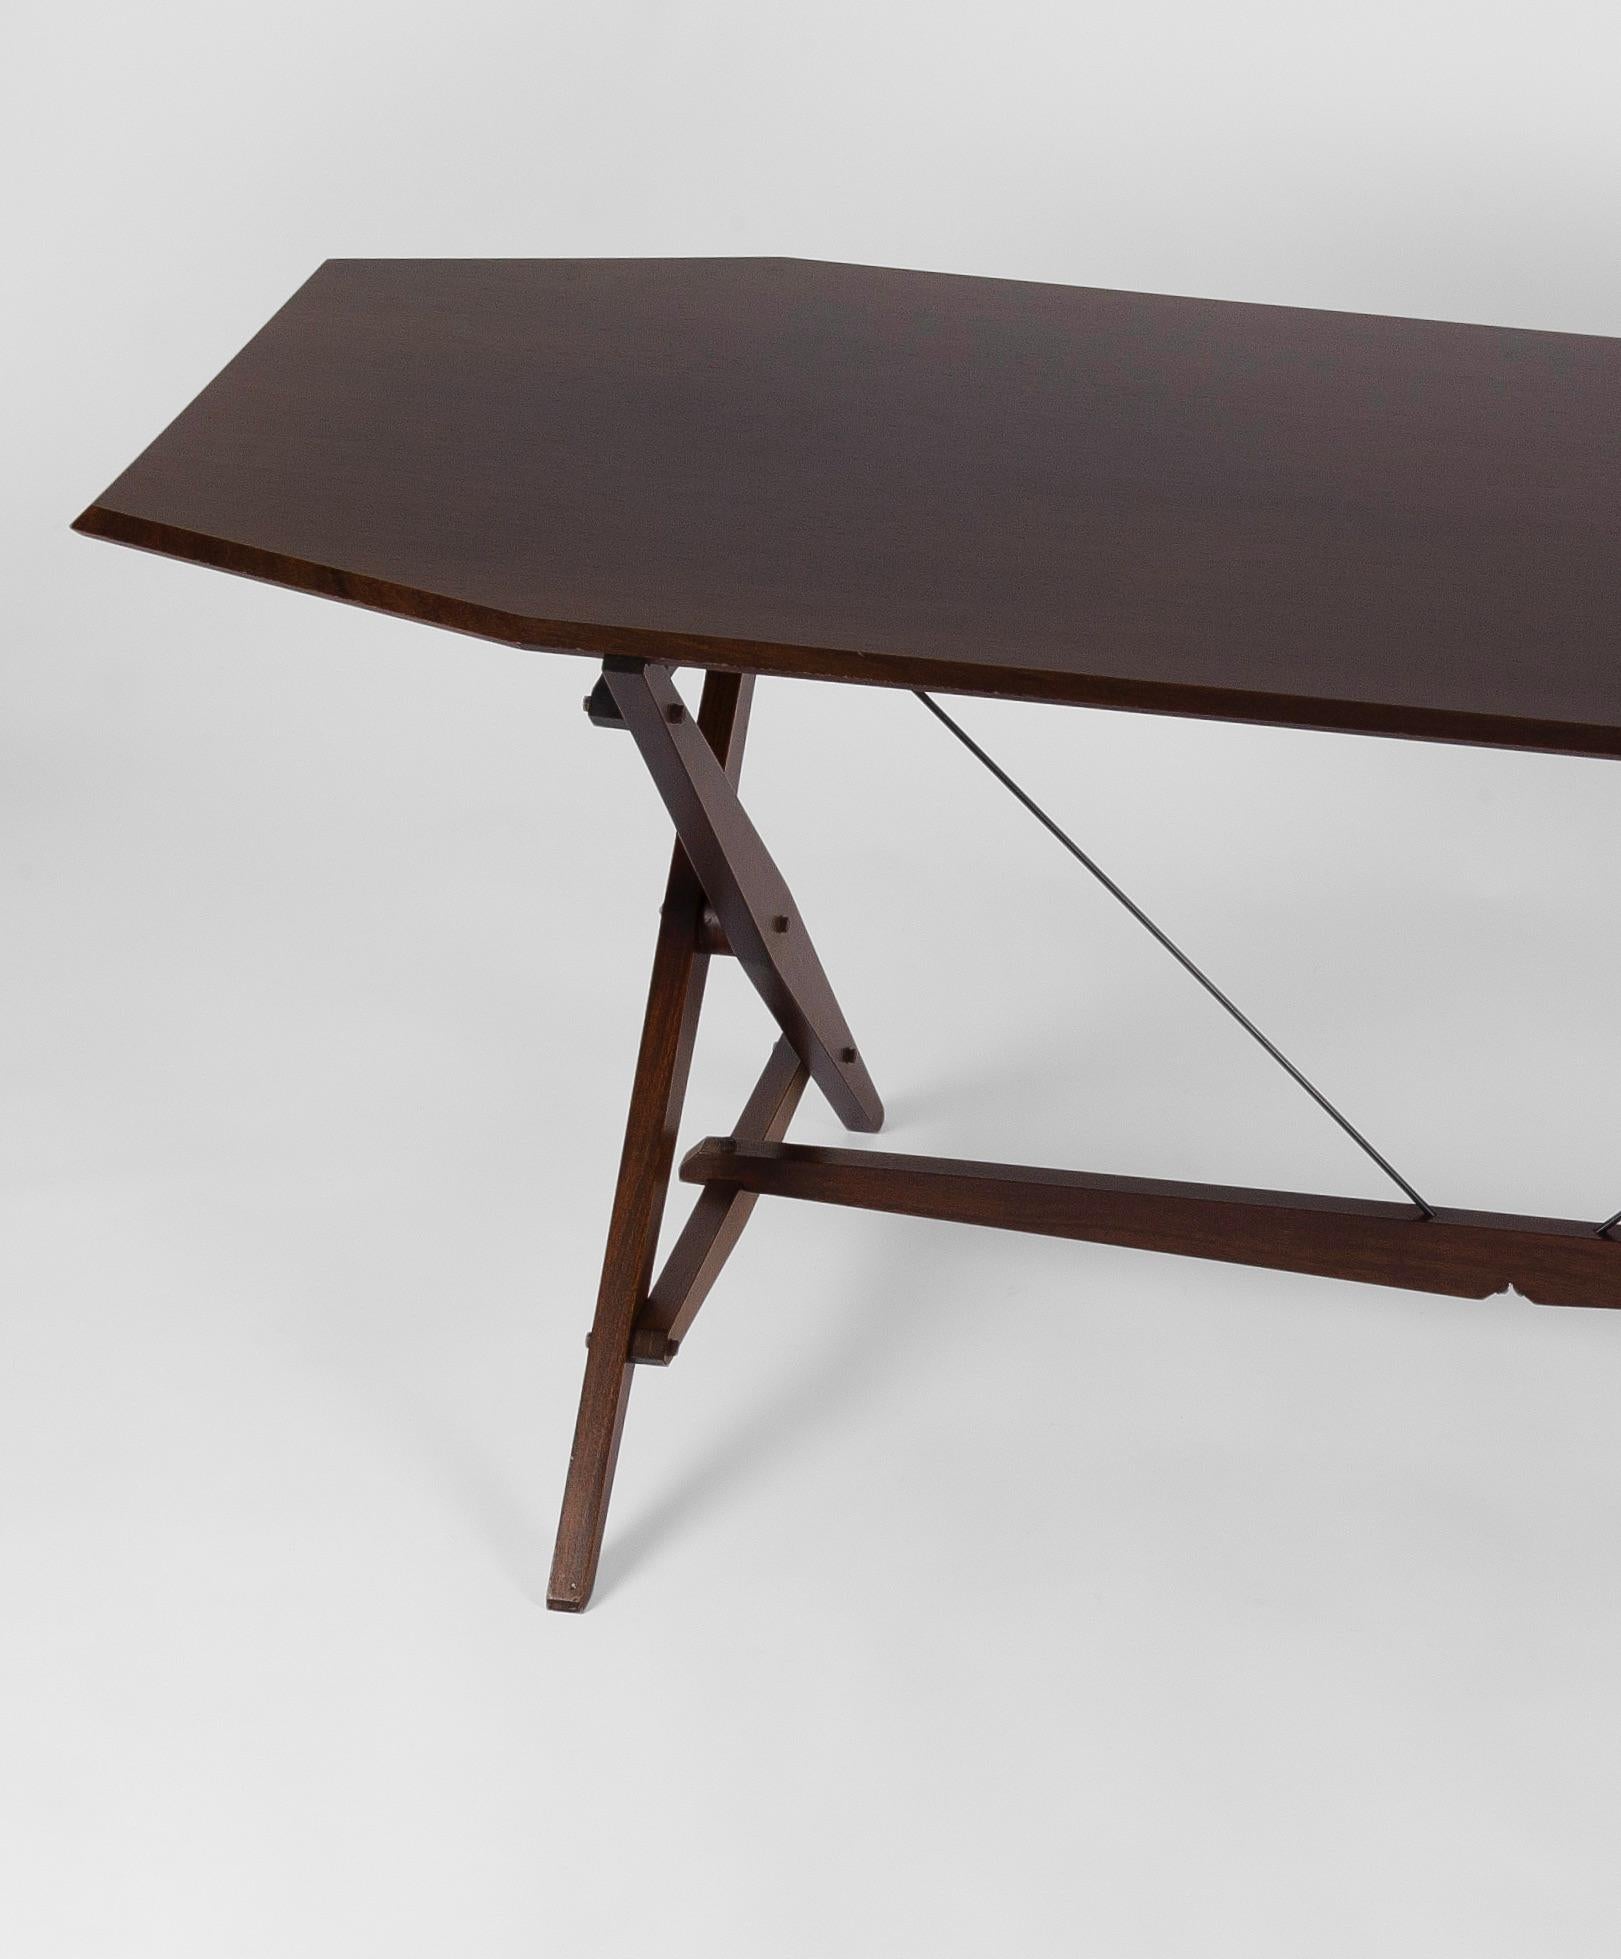 Rare version en acajou de la table Cavaletto ou TL2 conçue par le grand designer néo-rationaliste Franco Albini. Conçu en 1950 pour les fabricants Poggi, le Cavaletto (tréteau) est à la fois une table et un bureau, grâce à ses supports en 